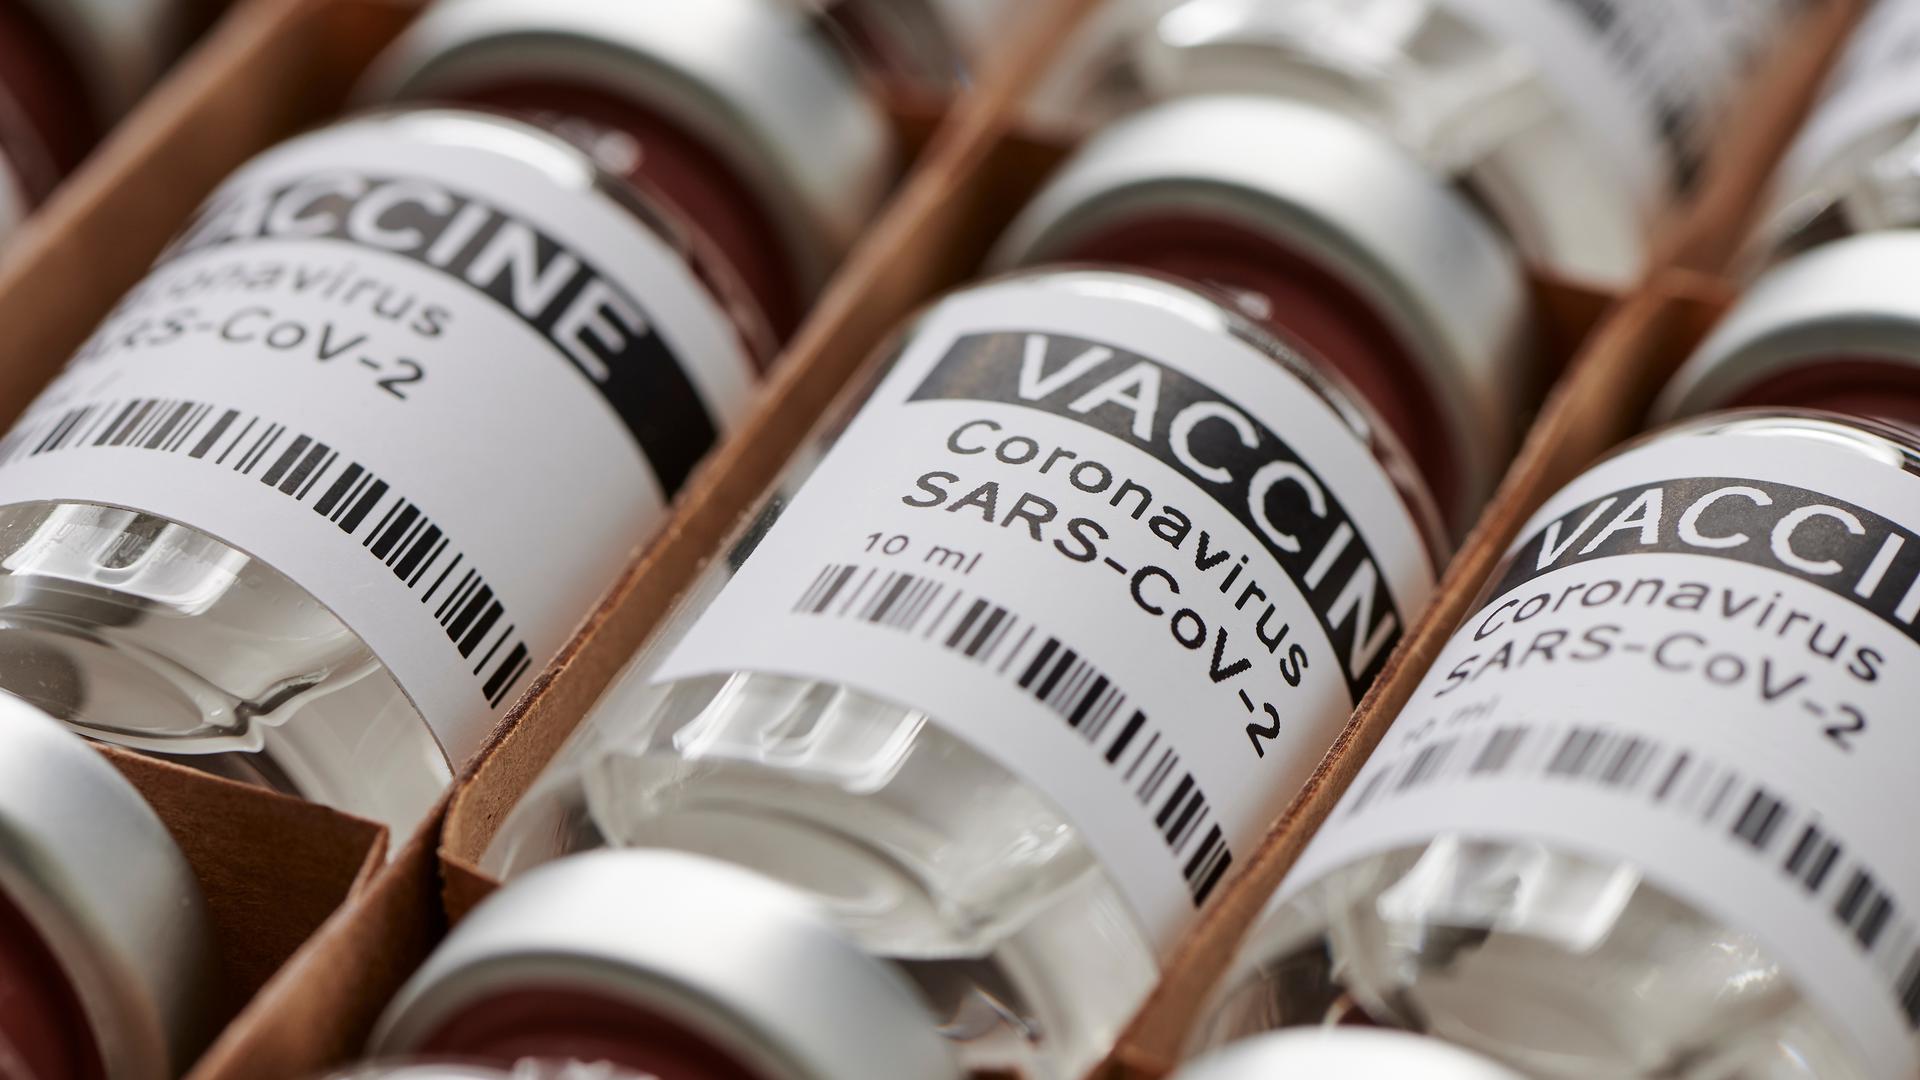 Les experts s'étaient montrés moins catégoriques en juin sur la question de l'obligation vaccinale qu'ils ne l'étaient en janvier.